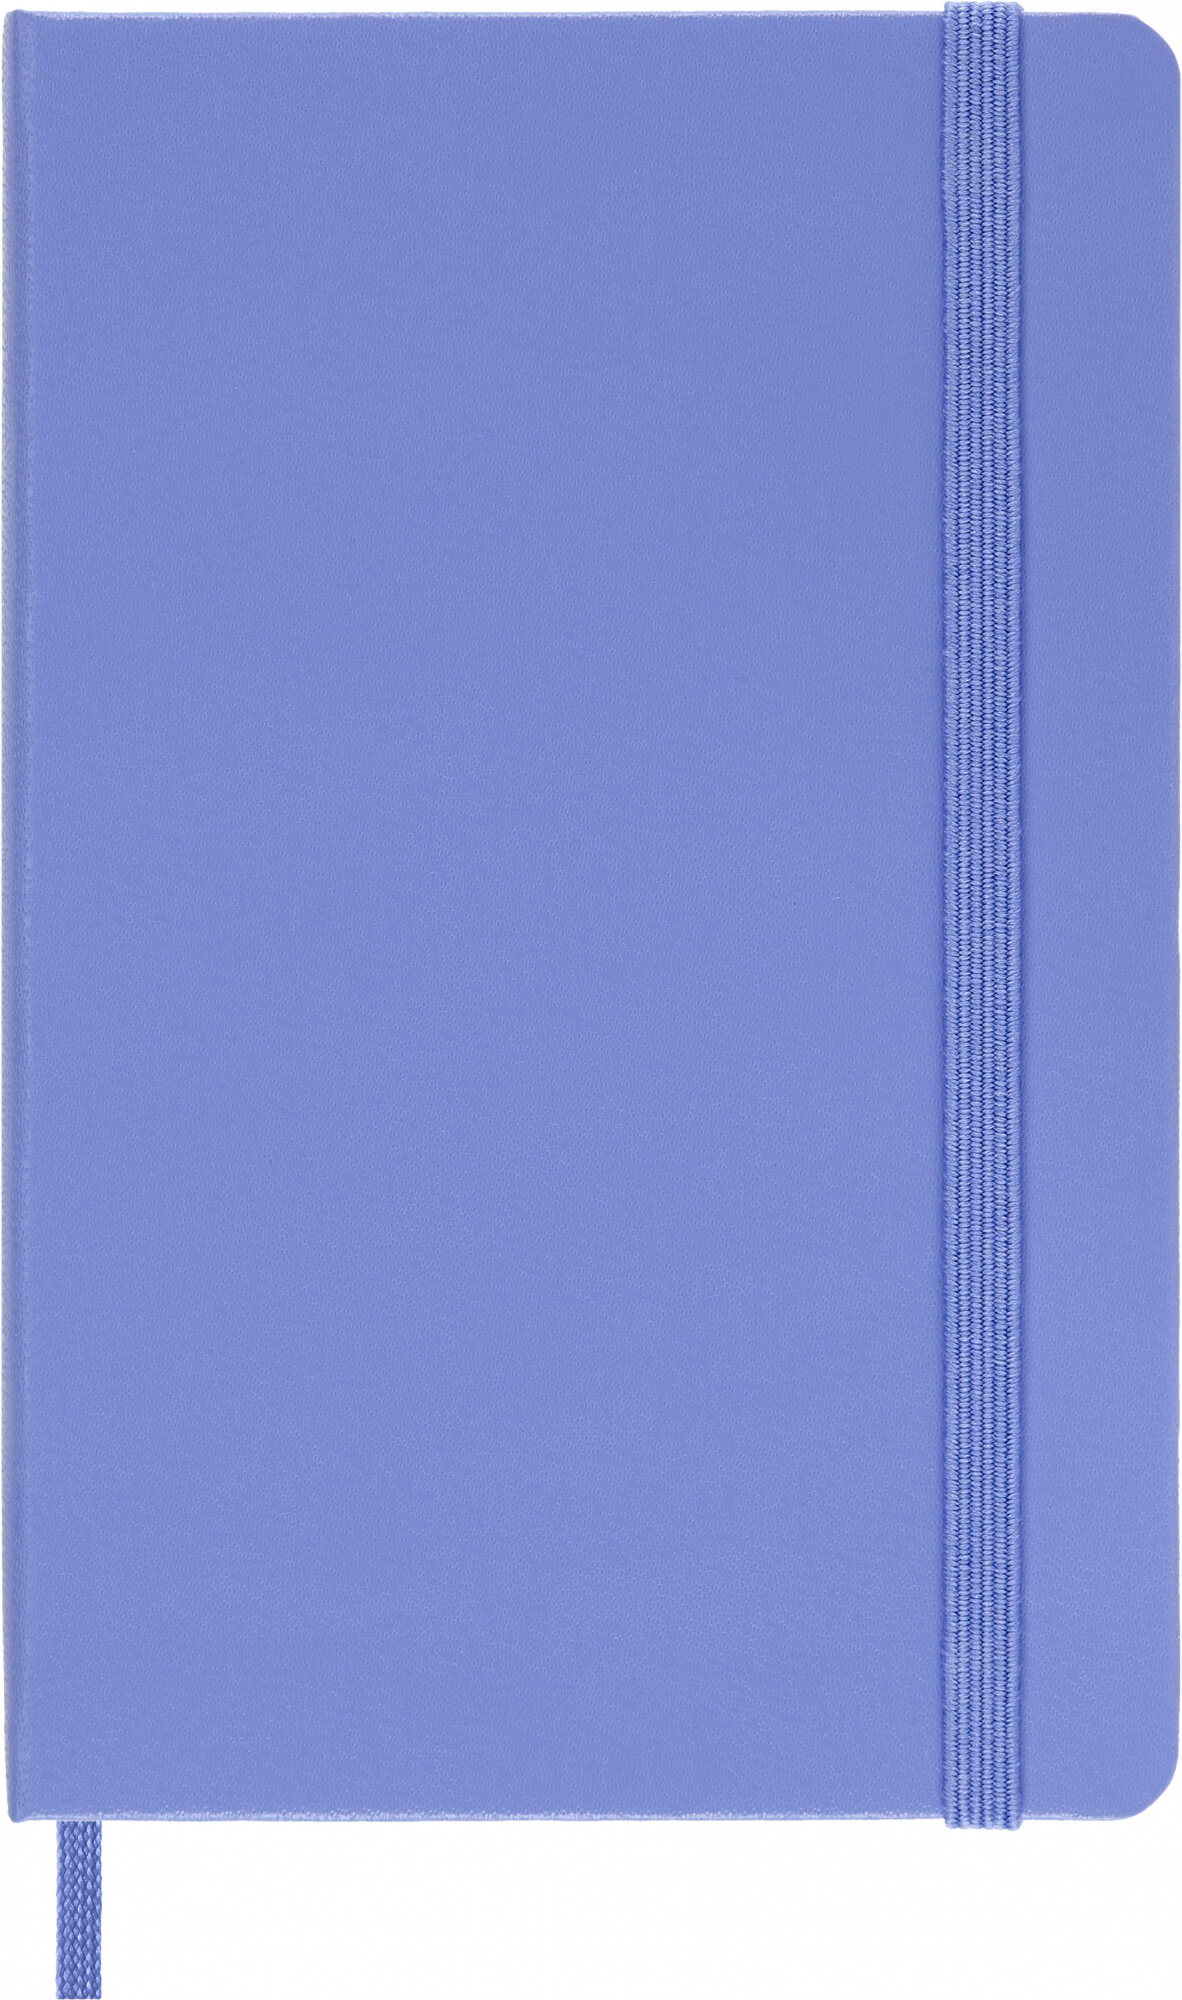 Блокнот Moleskine CLASSIC Pocket 90x140мм 192стр. линейка твердая обложка голубая гортензия - фото №8